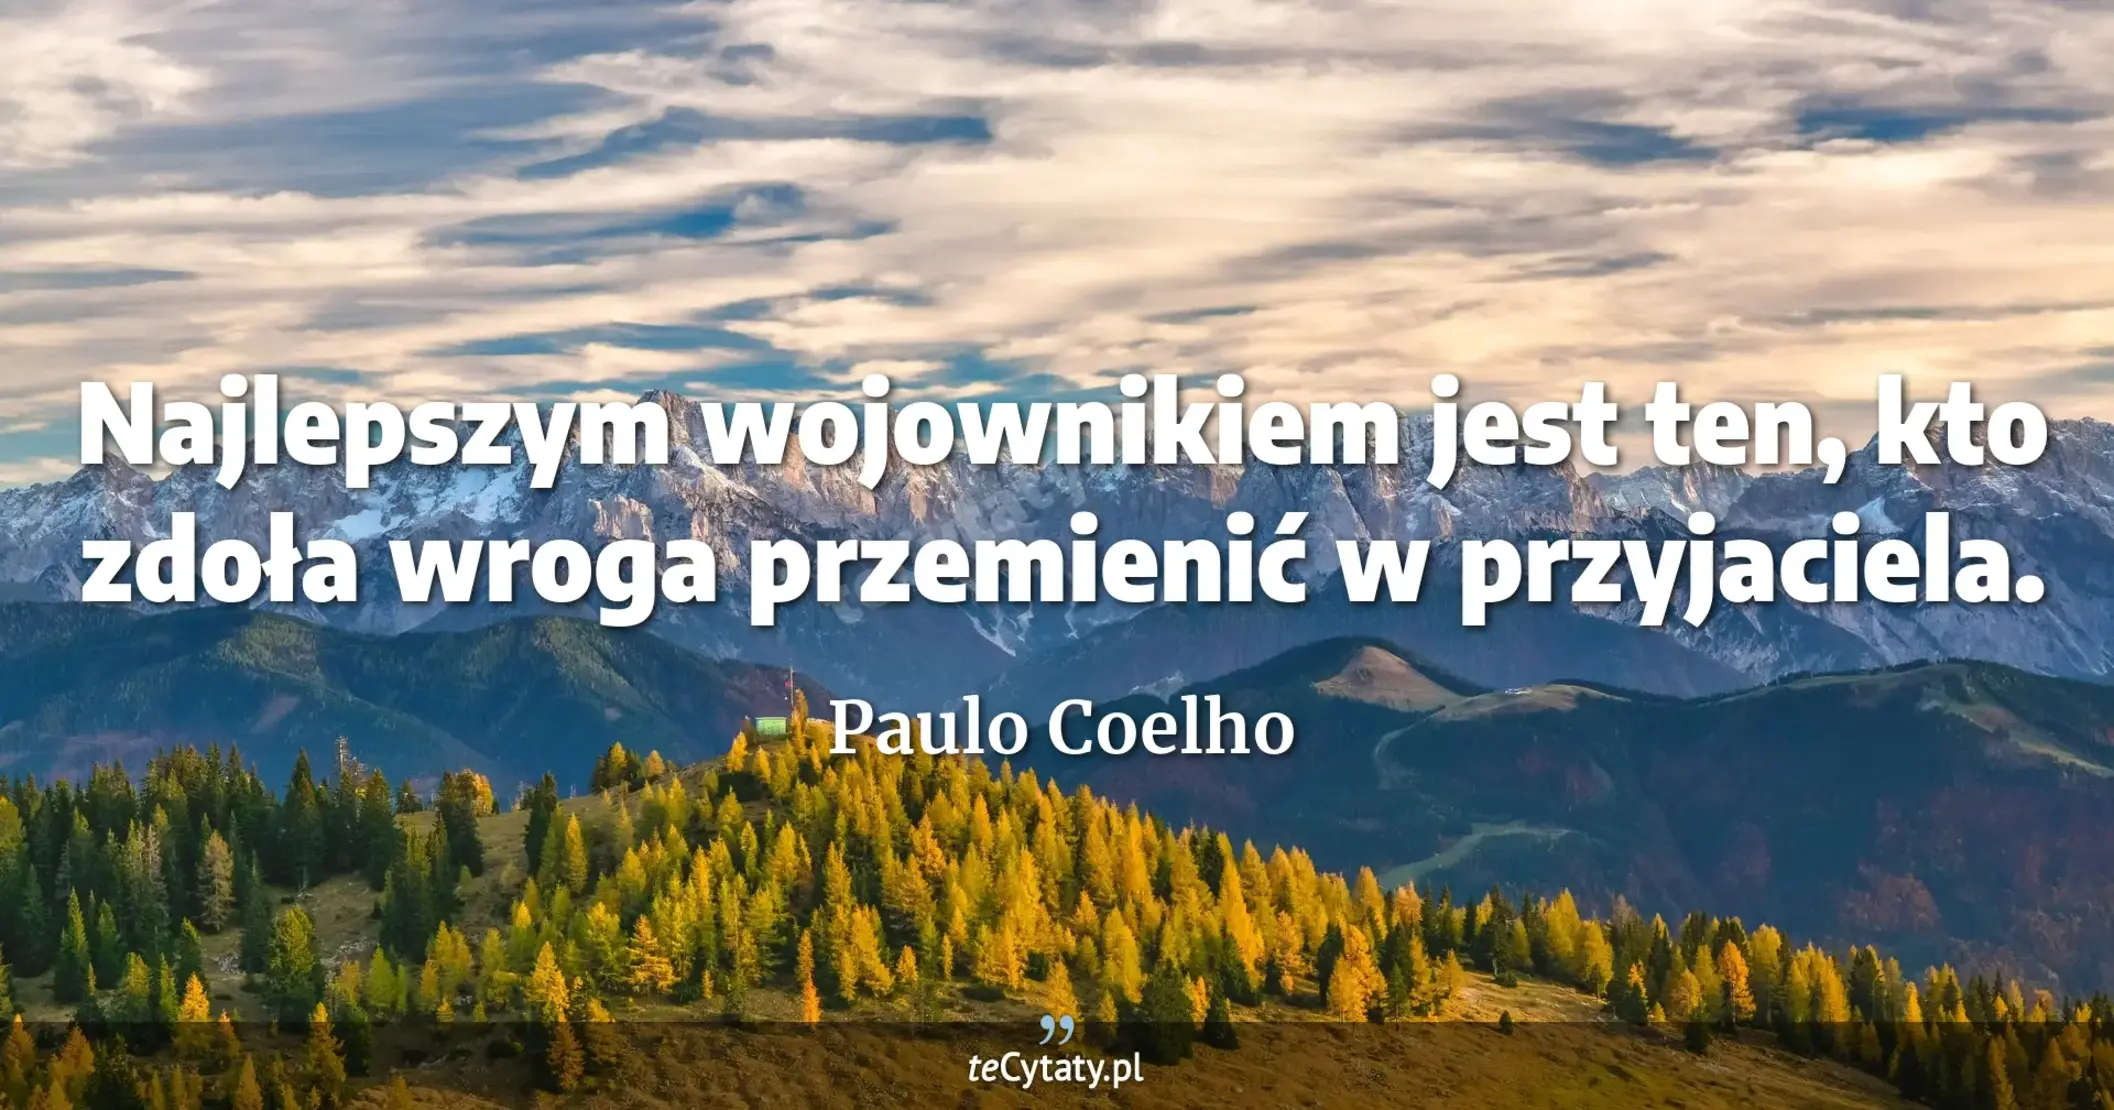 Najlepszym wojownikiem jest ten, kto zdoła wroga przemienić w przyjaciela. - Paulo Coelho